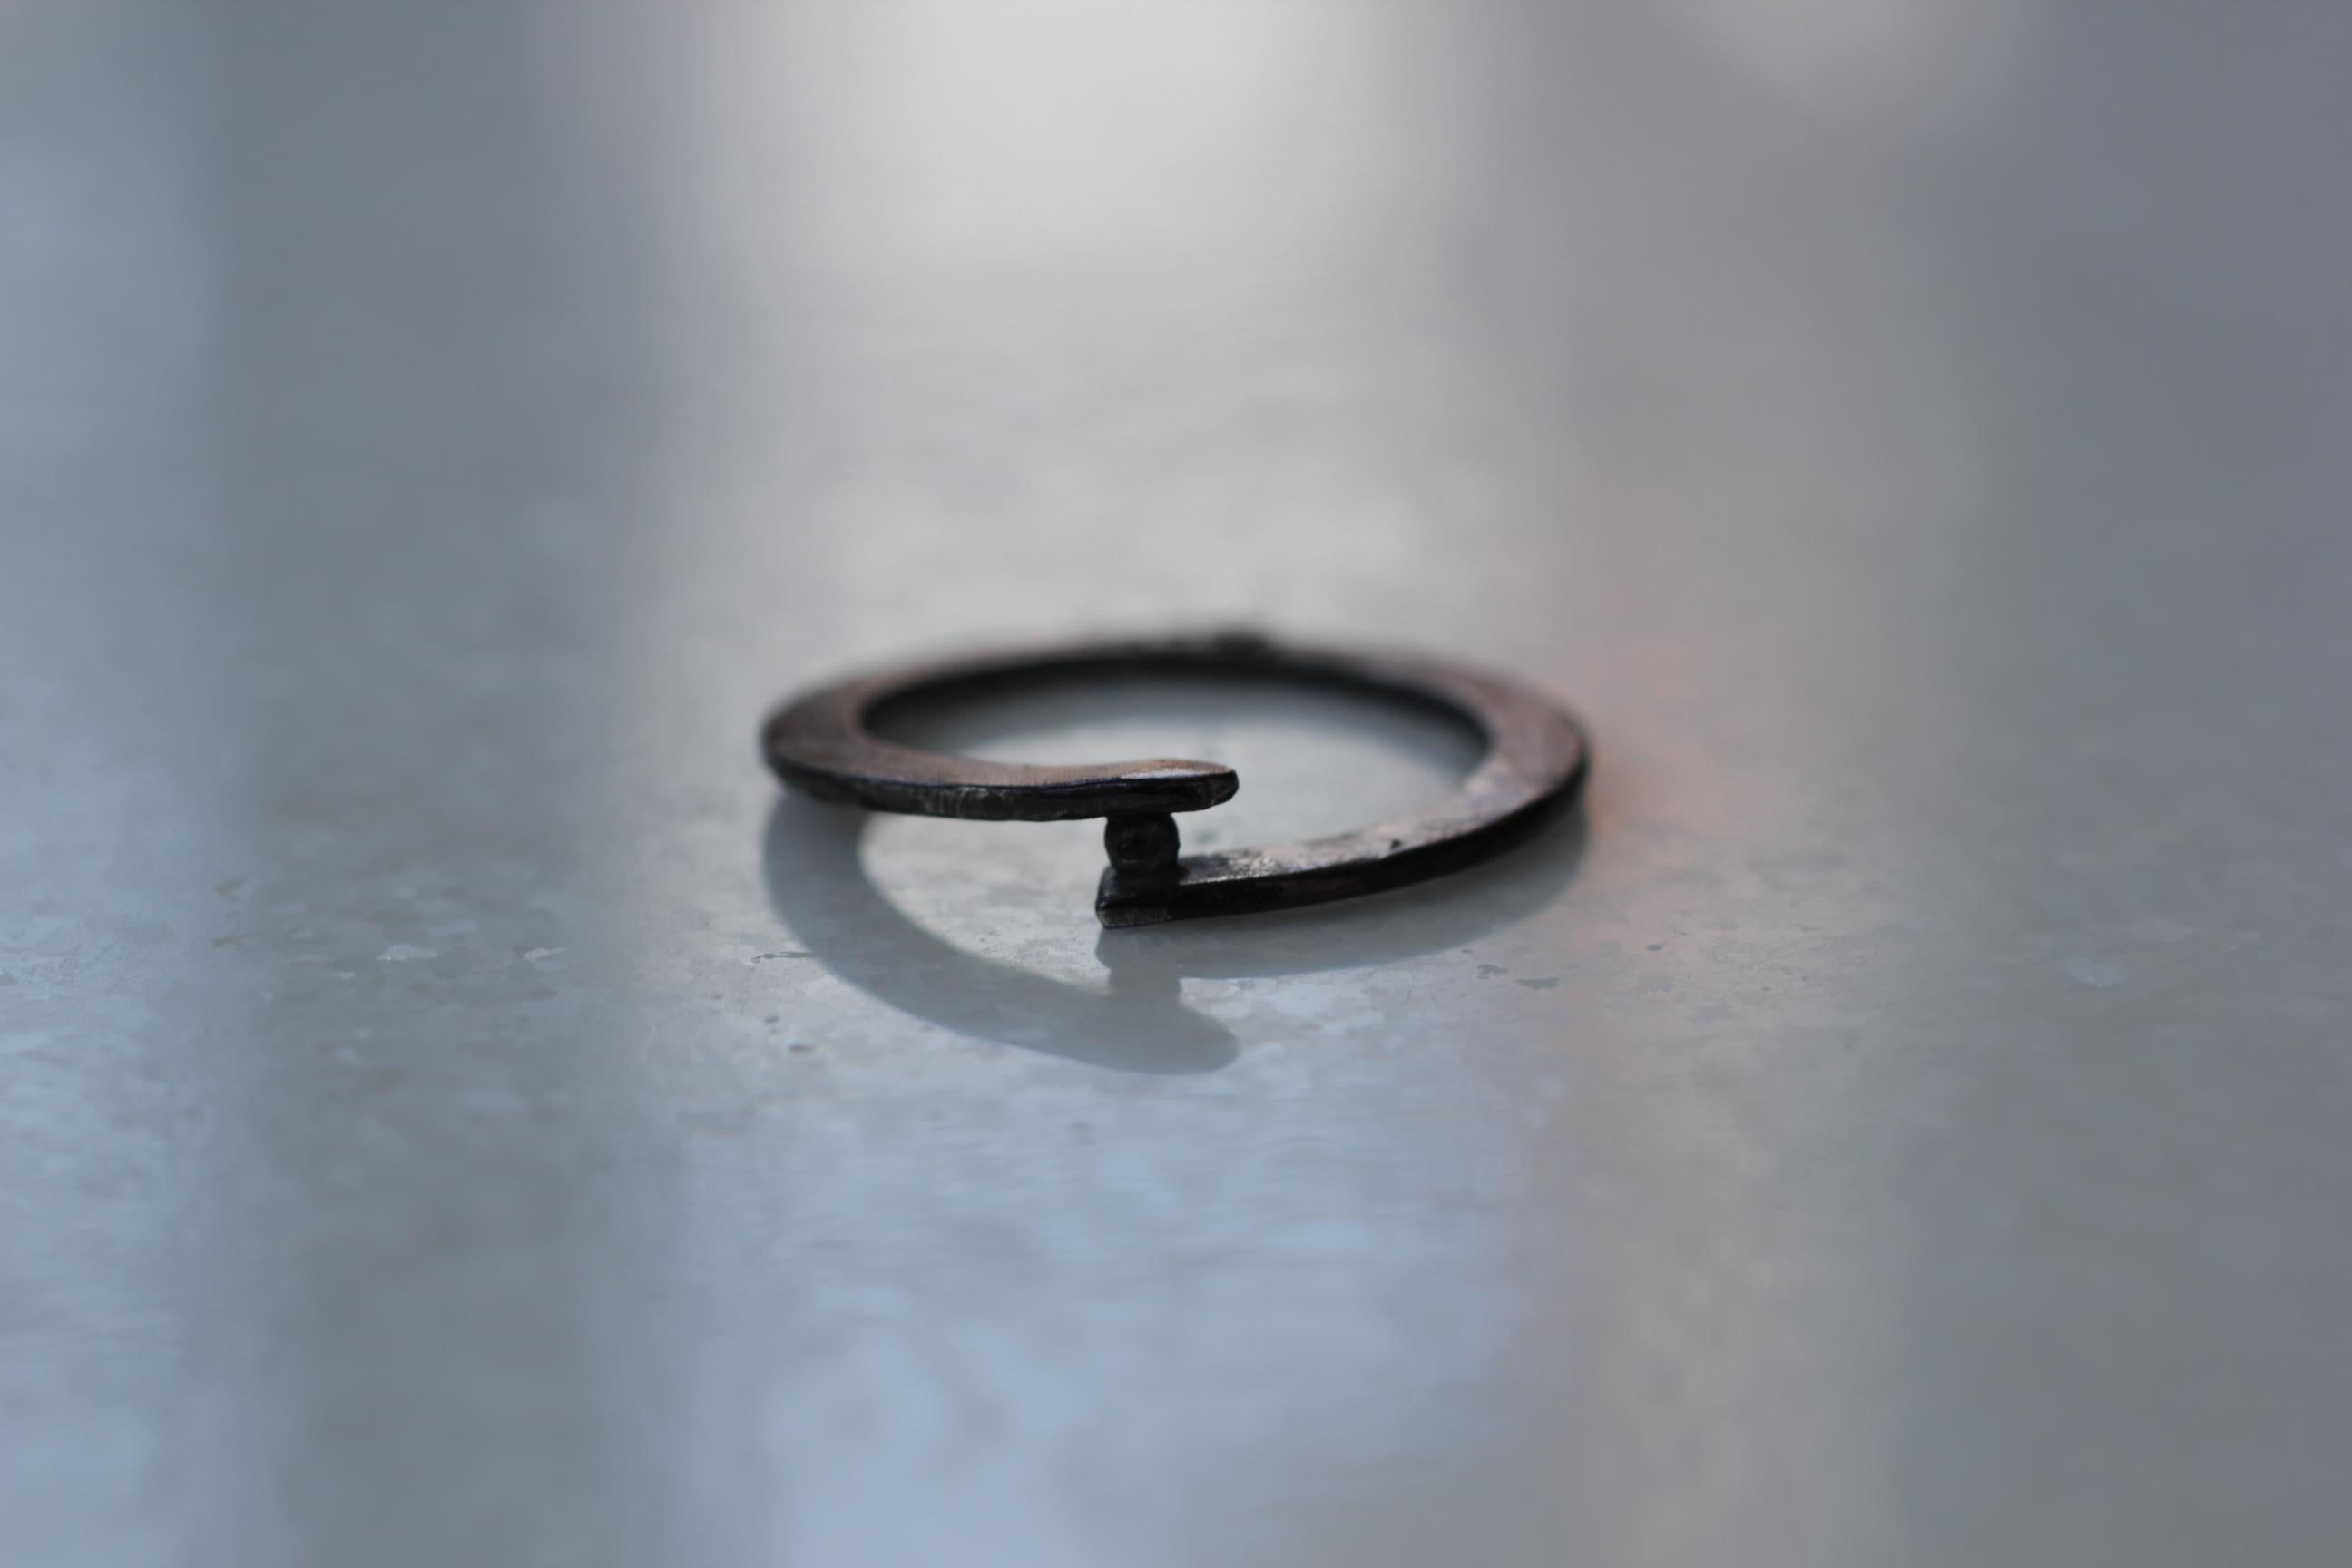 Einfachheit mit einem Twist, der ein Granulat hält, modernes Design.

Diese Auflistung ist für eine Mode-Ring in oxidiert oder geschwärzt Sterling Silber, Messung 1mm breit und 3mm dick.

Verfahren: Dieser auffällige Ring wird zunächst in